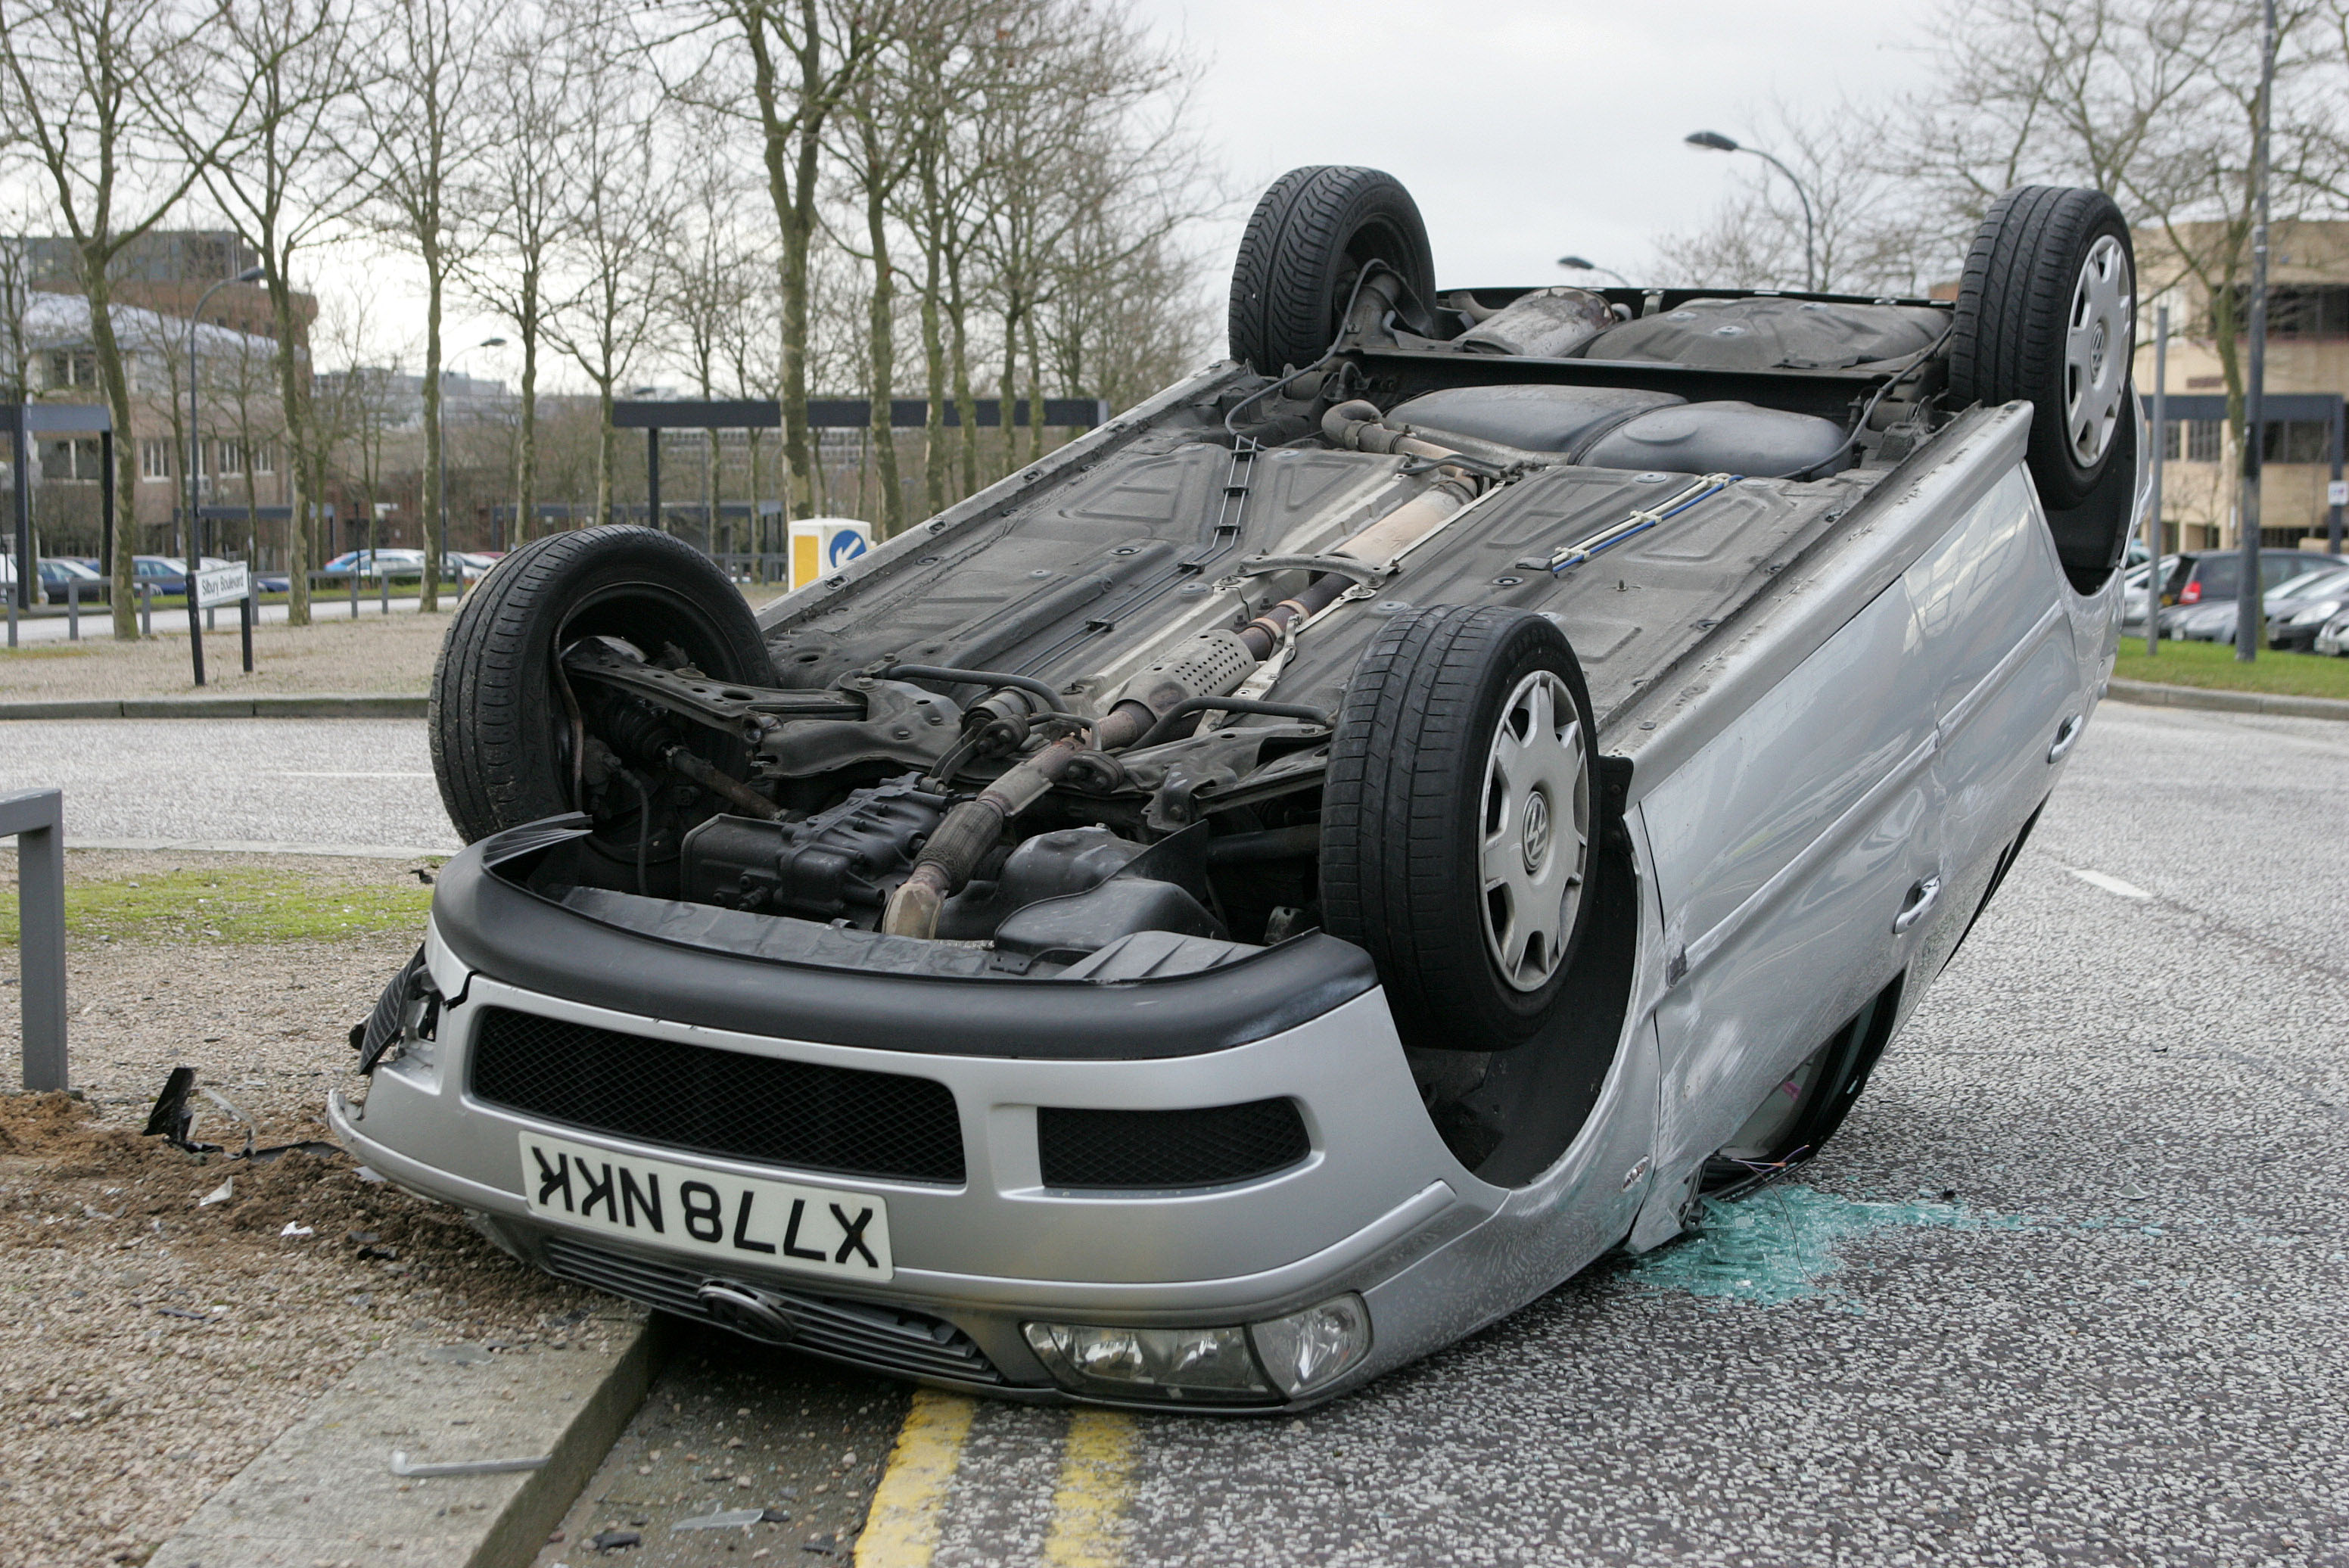 overturned Car